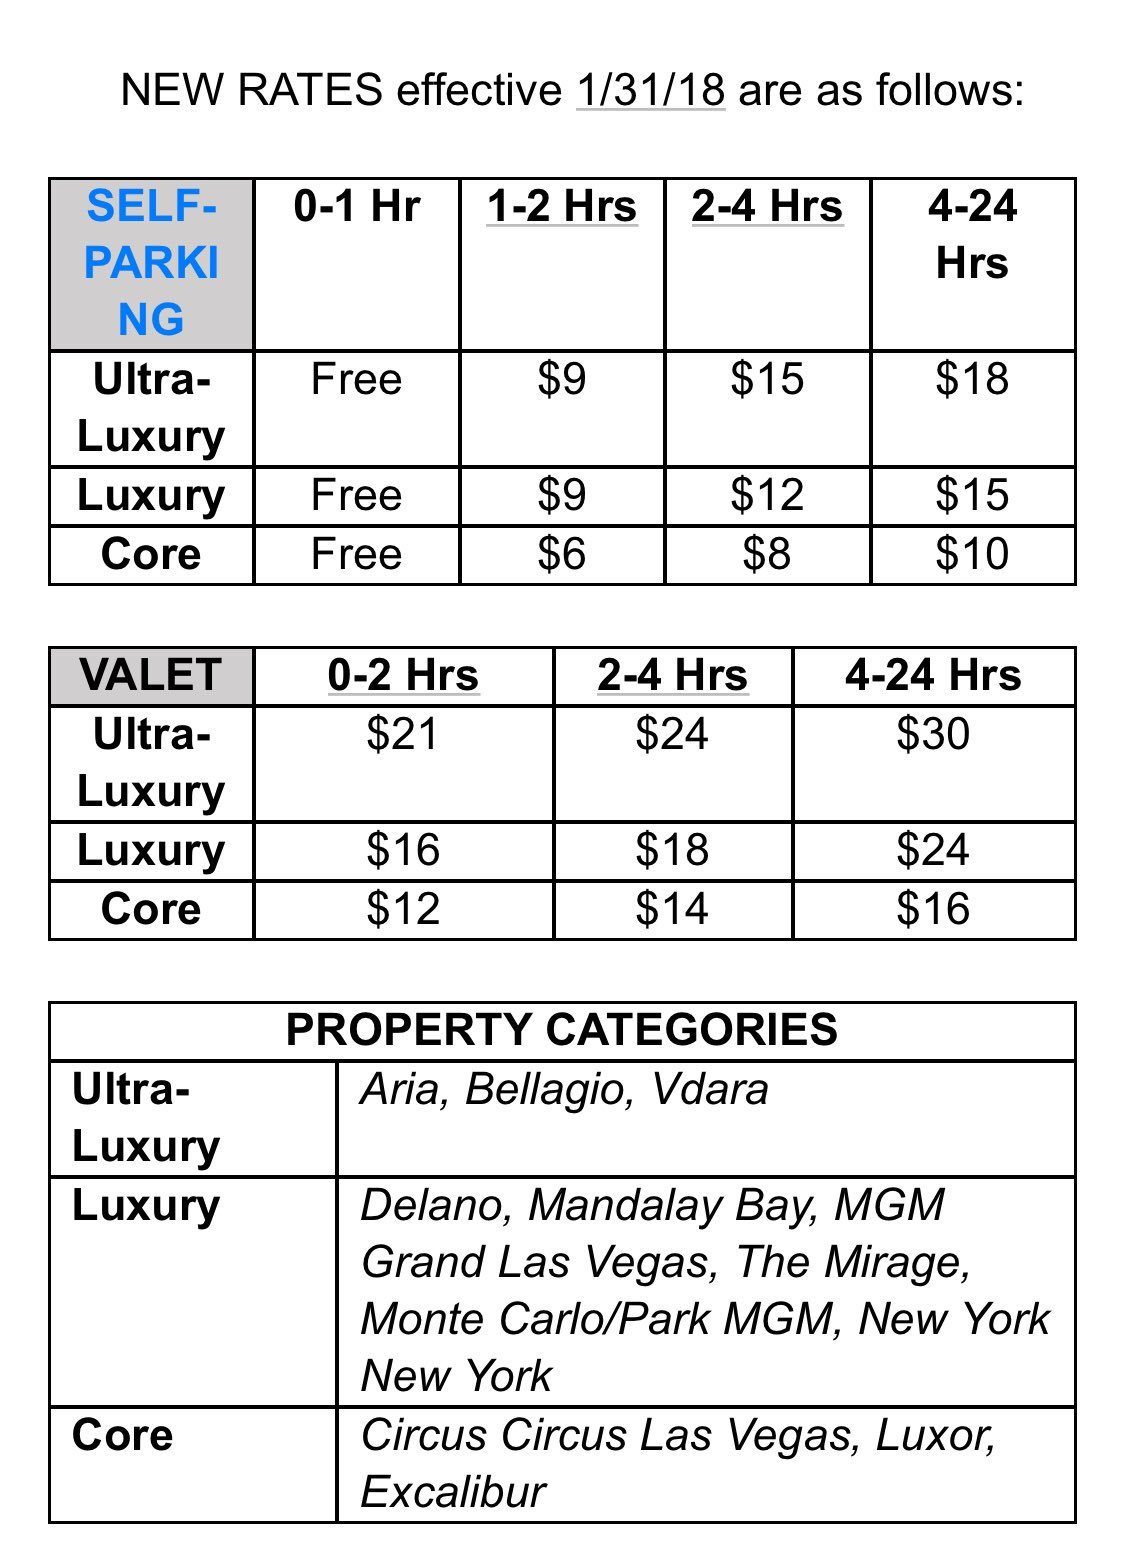 MGM Resorts parking rates increase